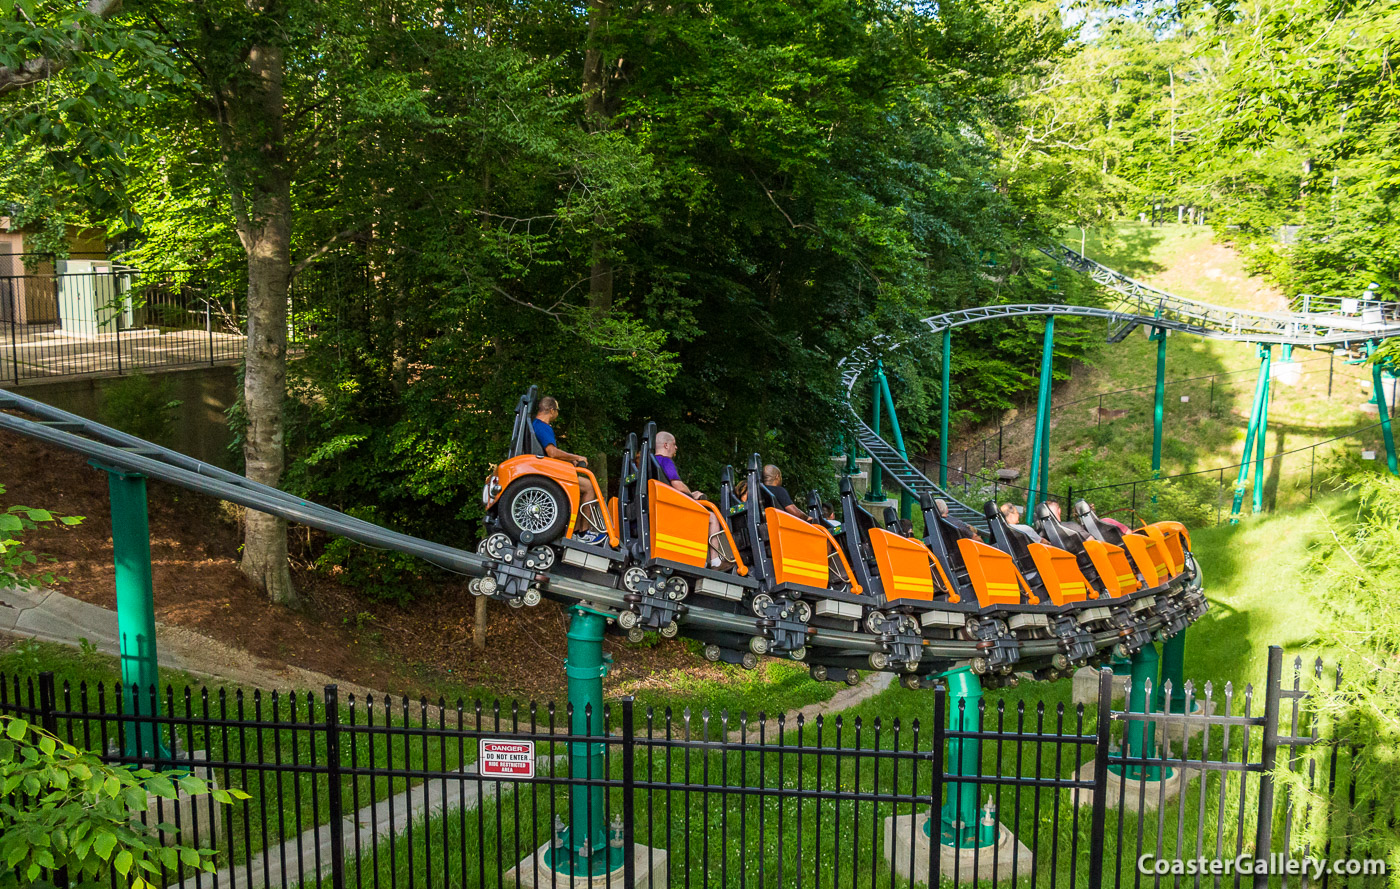 Verbolten roller coaster doing an S-turn